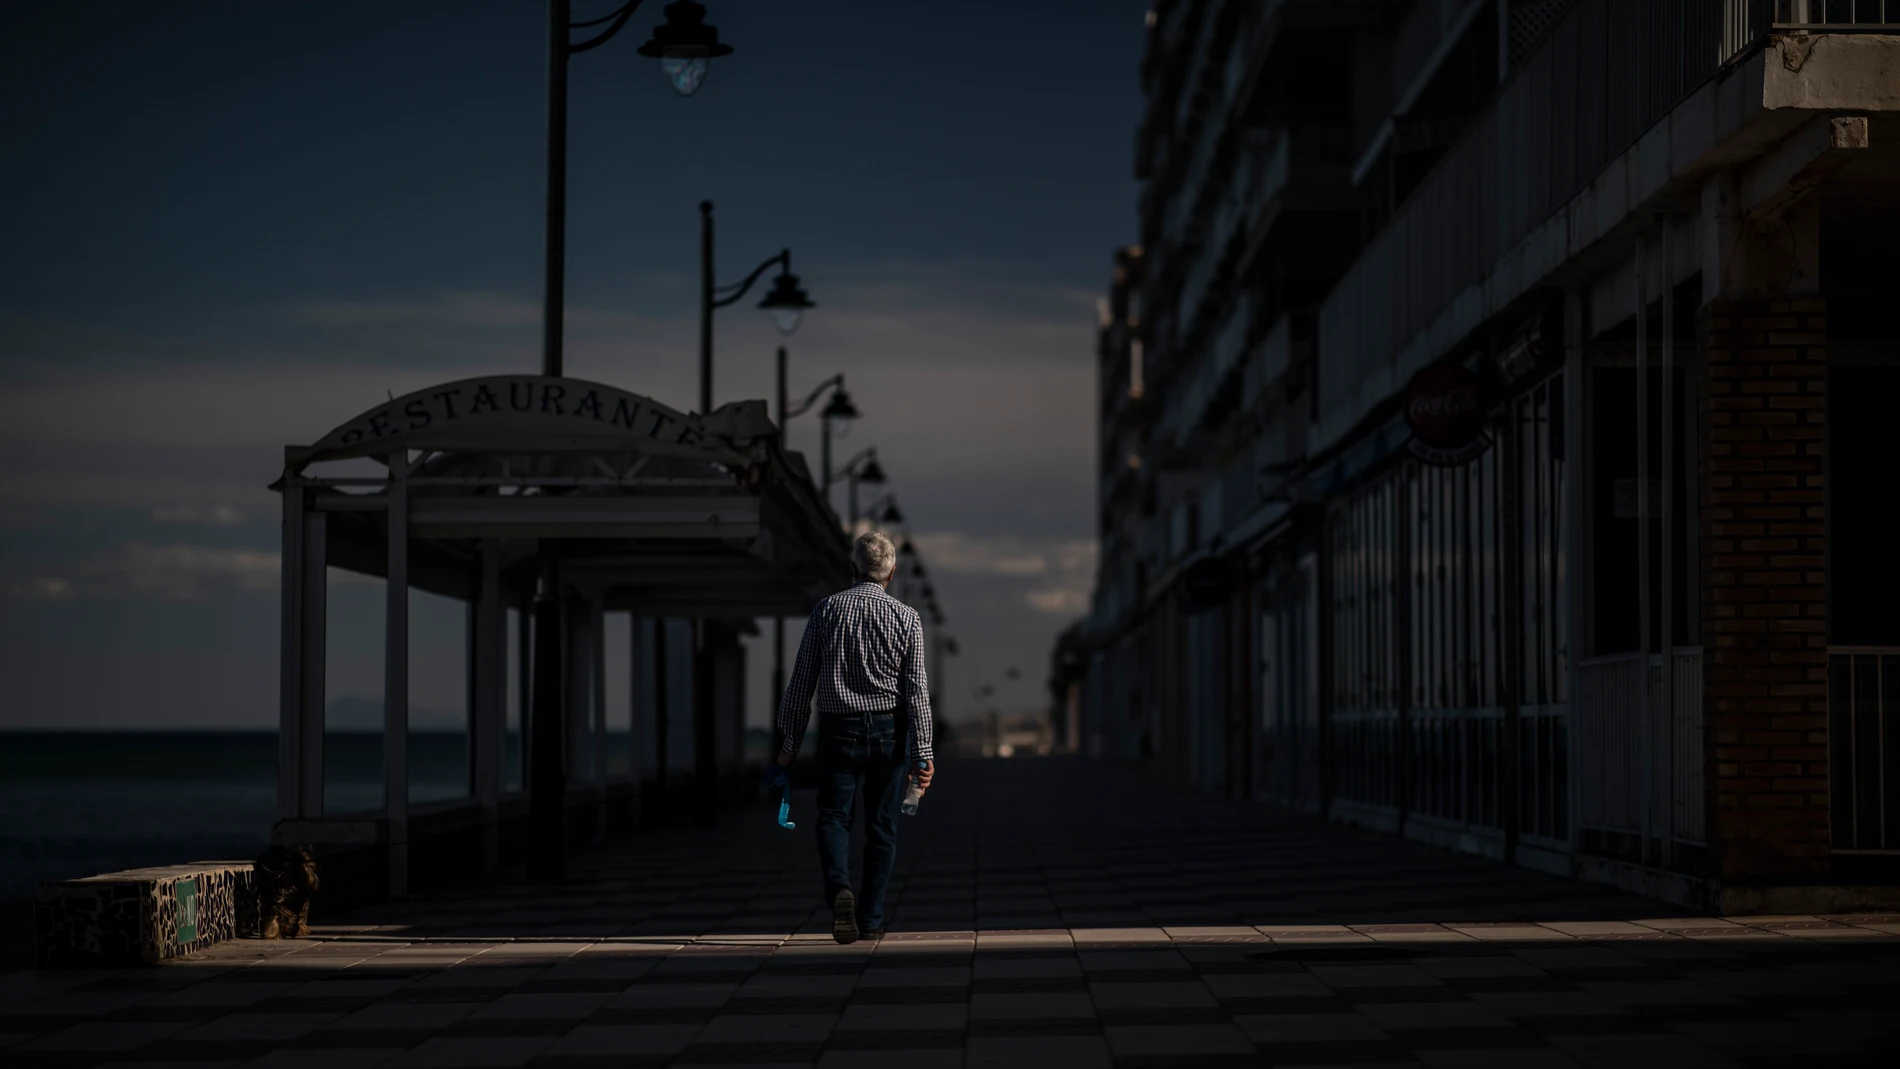 Un hombre pasea solitario por el paseo marítimo de Valencia sin llevar puesta la mascarilla